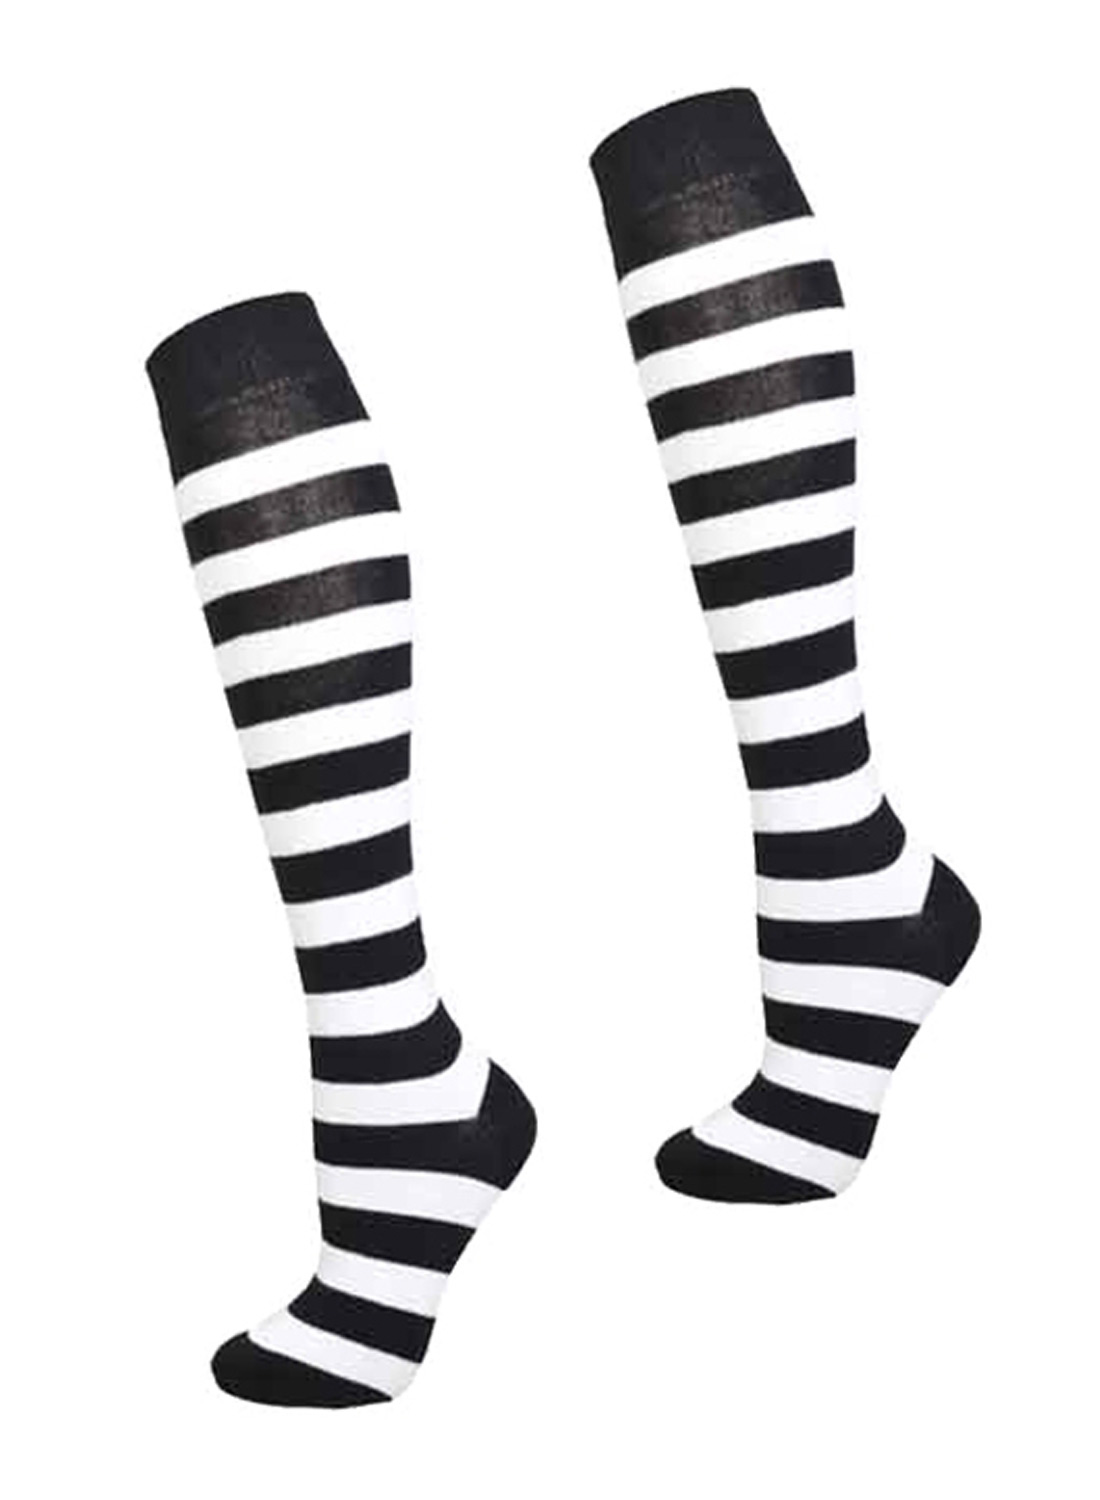 KH Socks Black White Stripes